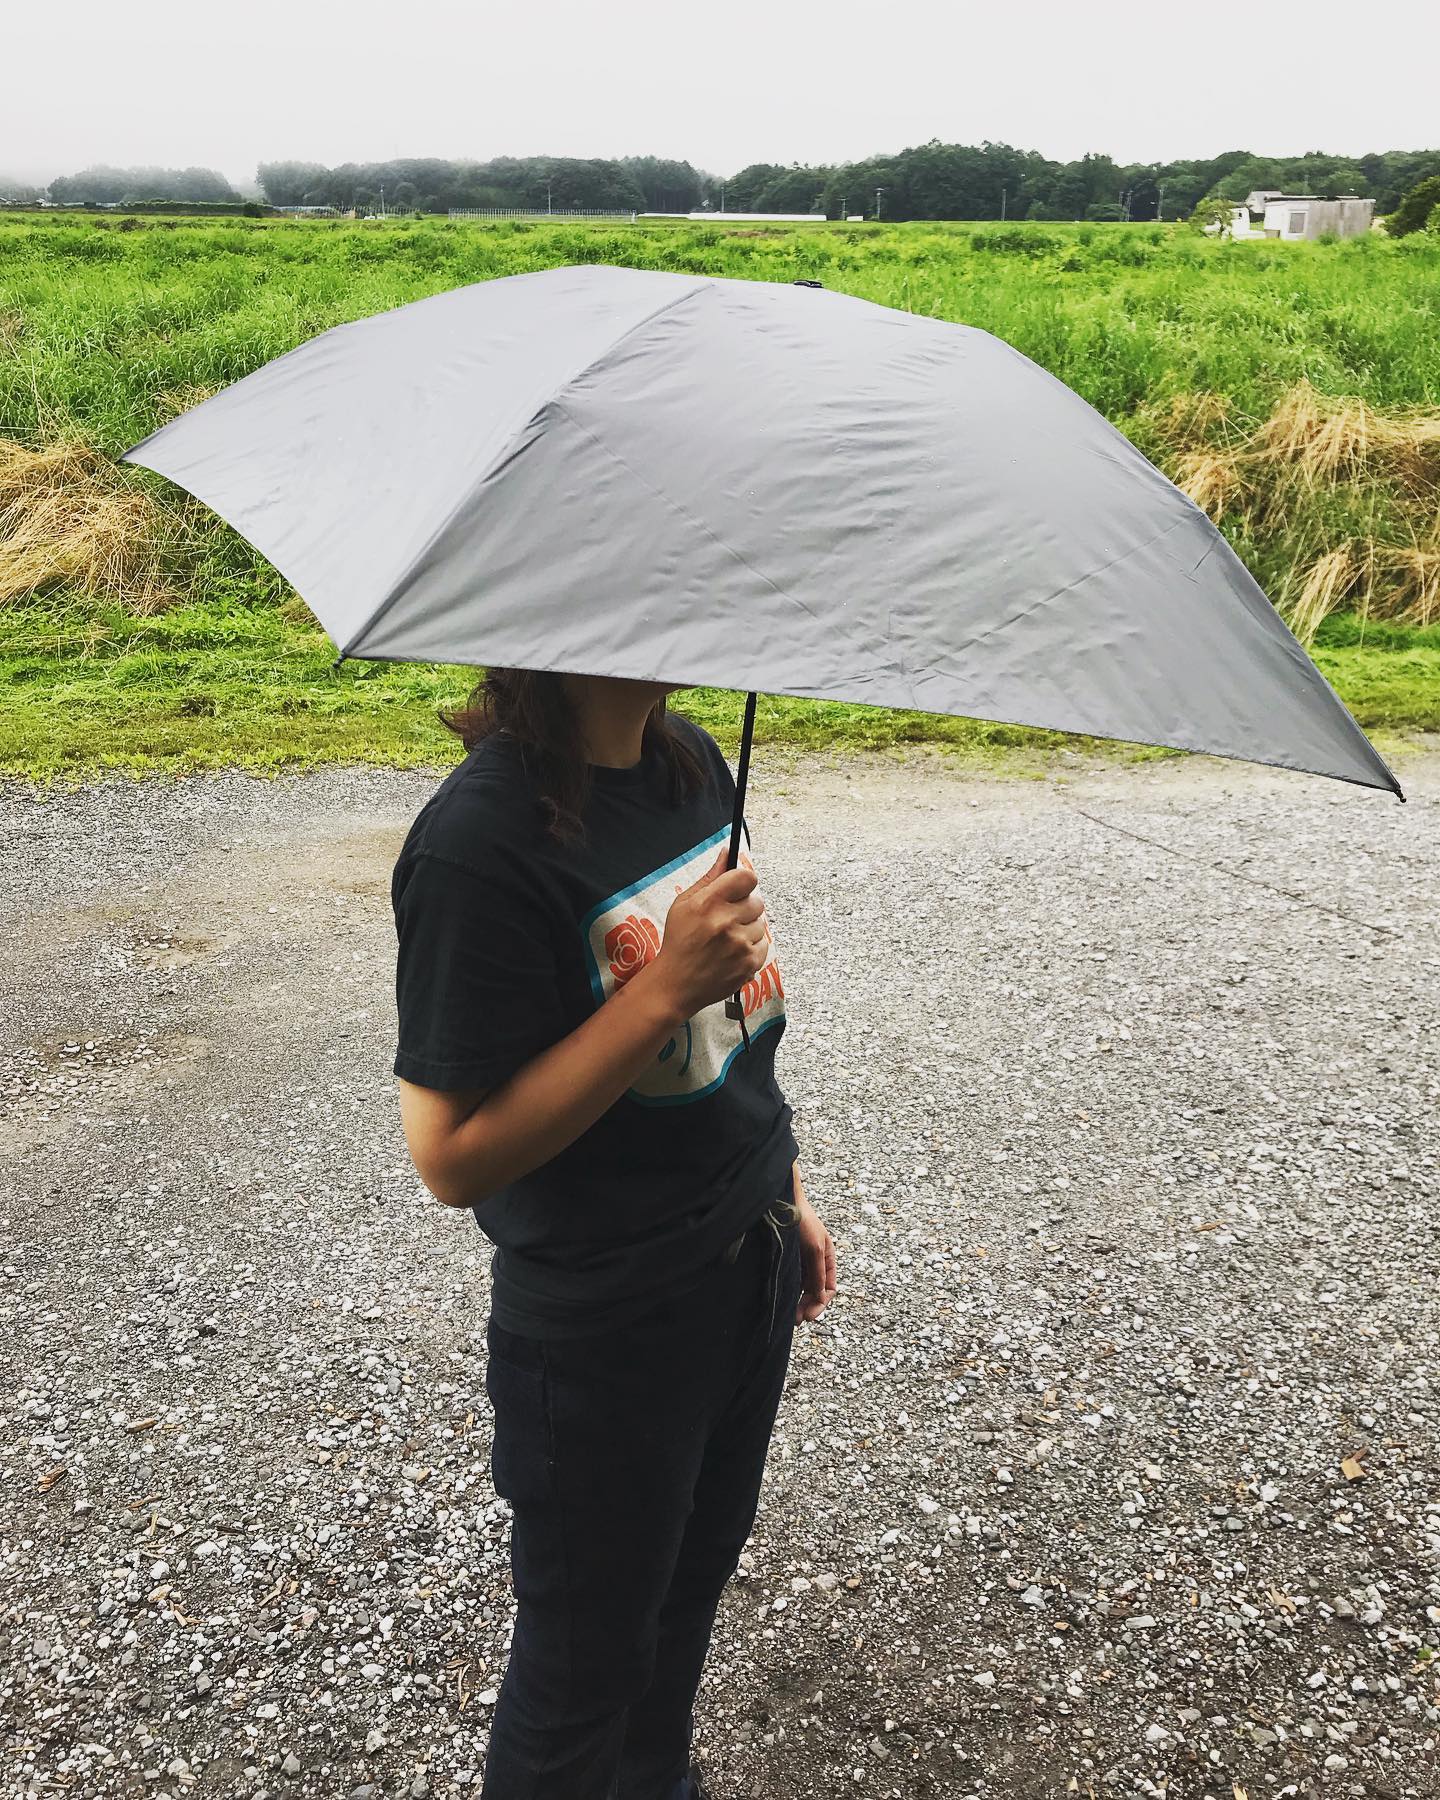 エバニュー ウルトラライトアンブレラ76g️超コンパクト傘入荷です^_^山の傘なんて言われますが、普段使いのバッグにしのばせておいても全然邪魔にならないくらいの軽さと小ささです！突然の雨に対処出来る優れもの️雨だって楽しんじゃお〜️ギフトにも良いですね^_^¥3,200税別カラー ブラック・グレー・ベージュ#エバニュー #sl76 #ウルトラライトアンブレラ#傘 #折りたたみ傘 #突然の雨 #ゲリラ豪雨 #ころばぬ先の杖 #山の傘 #軽量 #コンパクト #アウトドア #ギフト @evernew_japan @stovehouse.woodstove